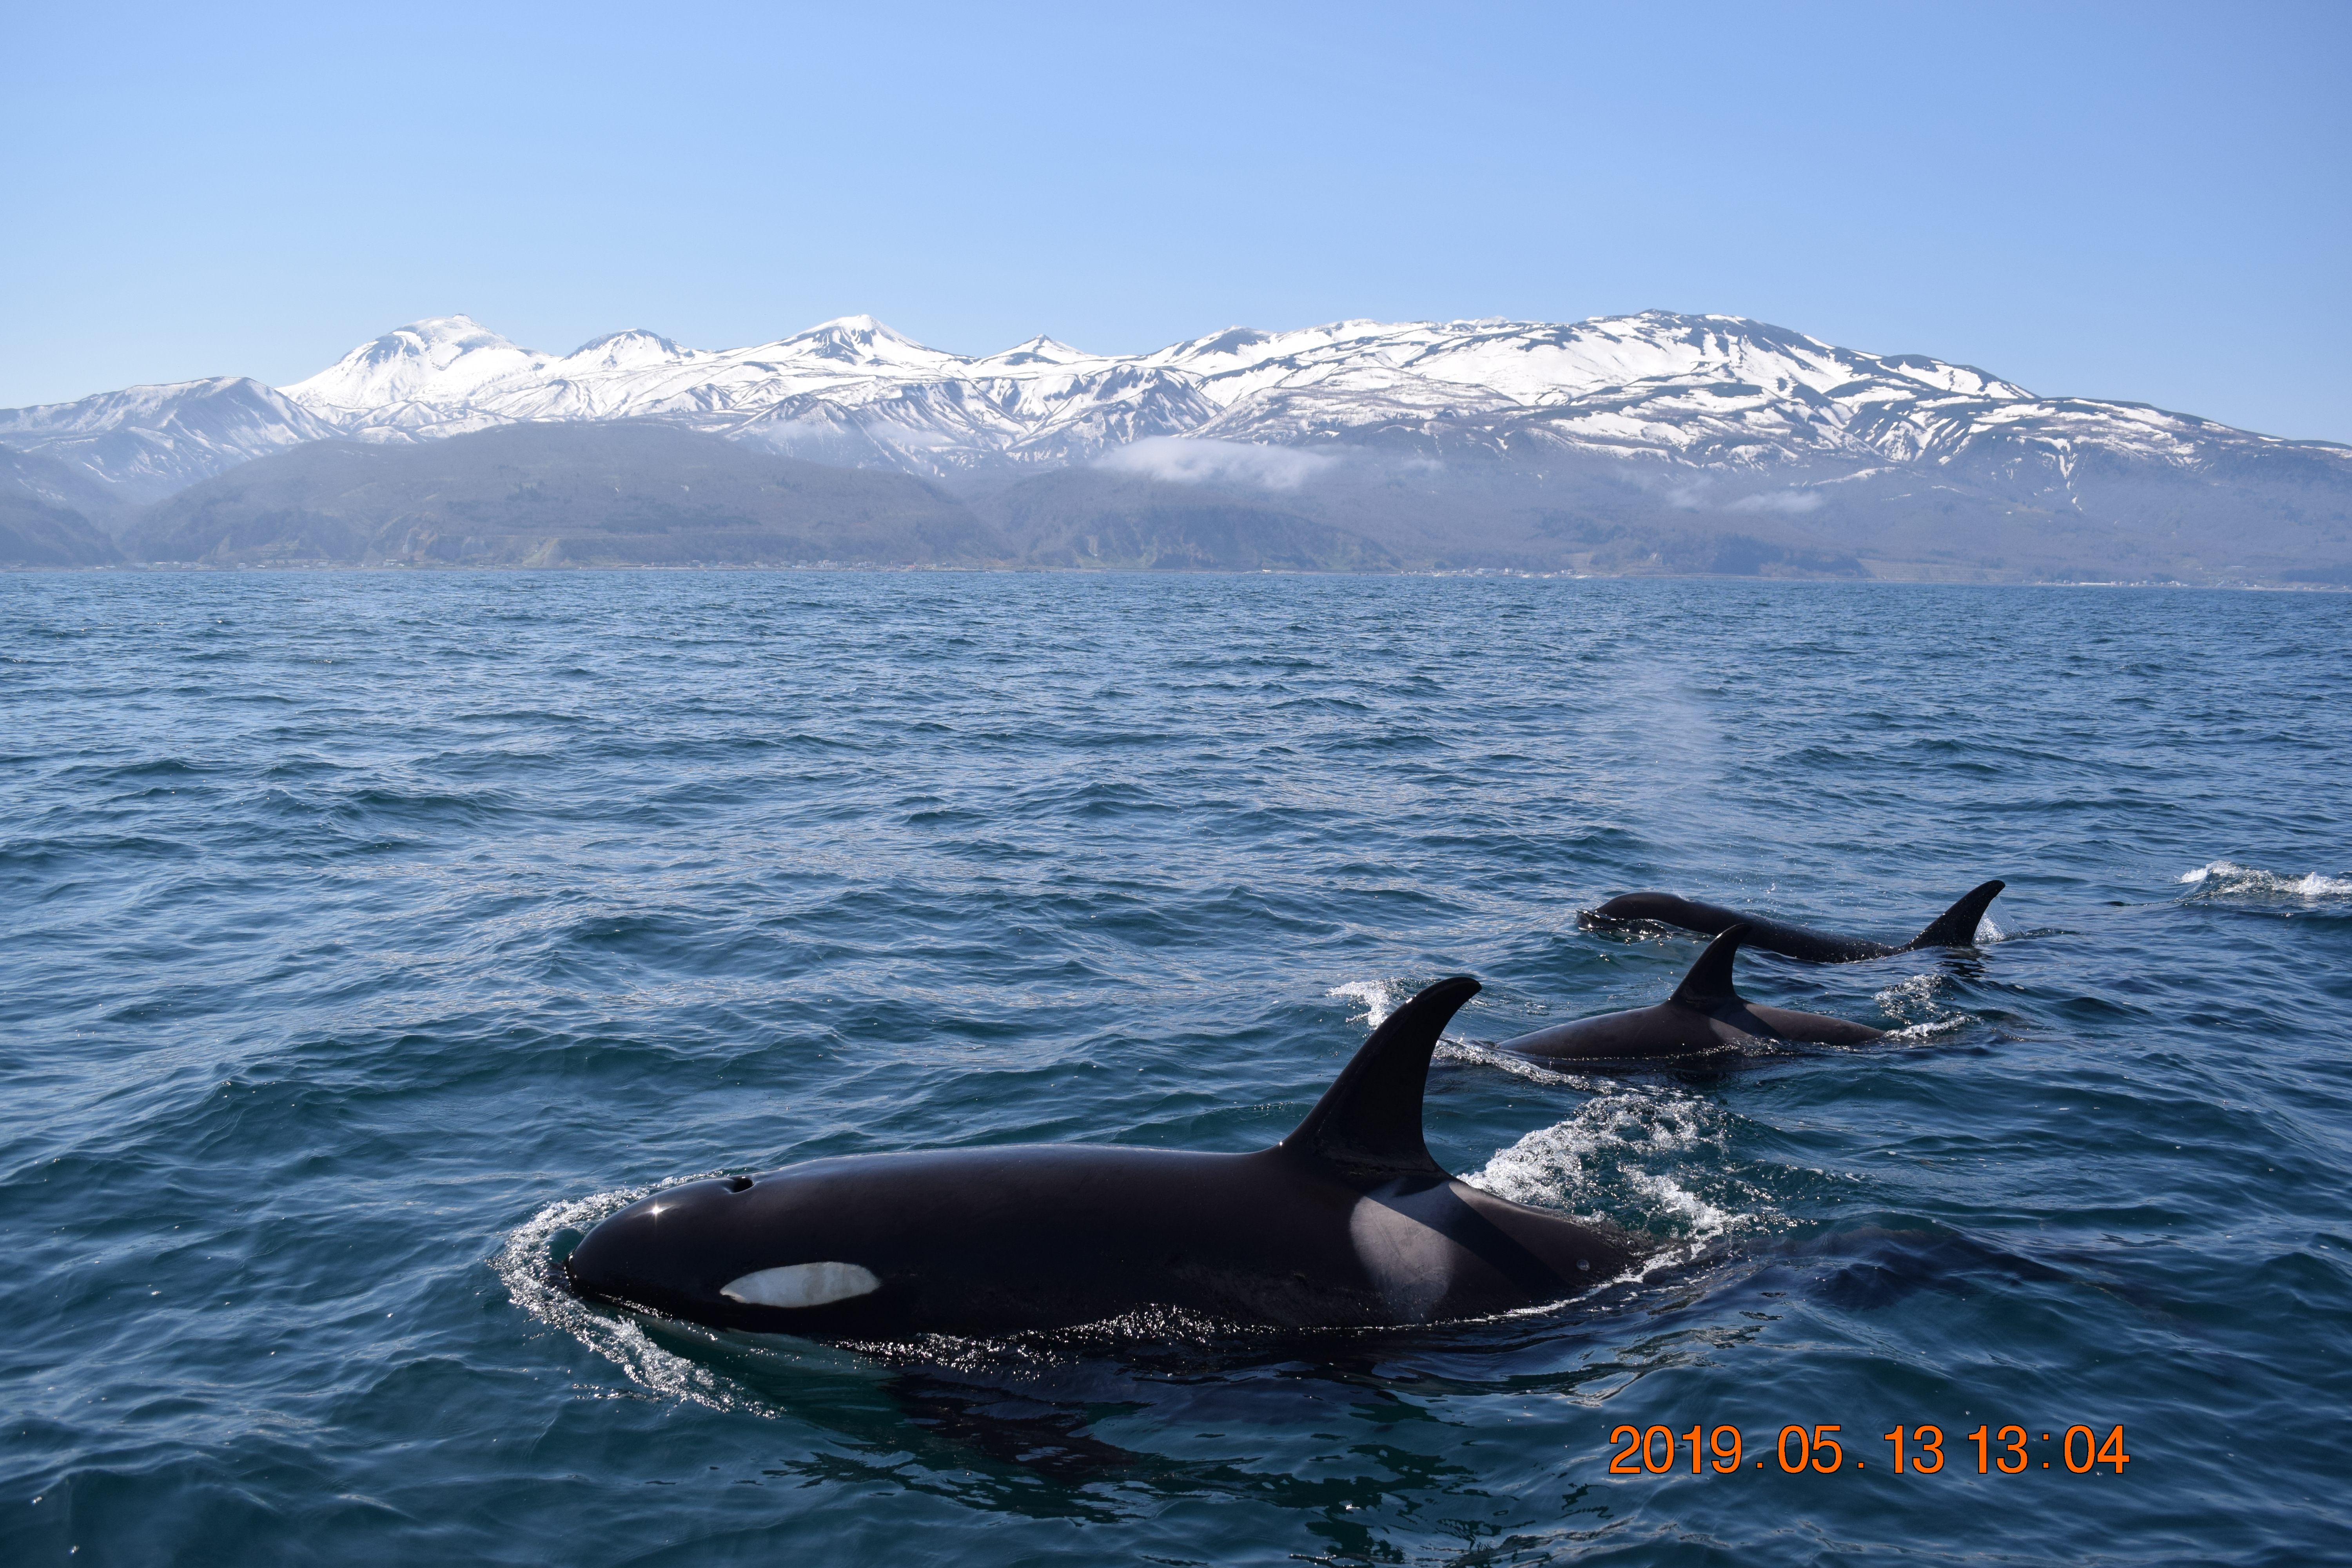 日本近海の小型鯨類の生態学的研究